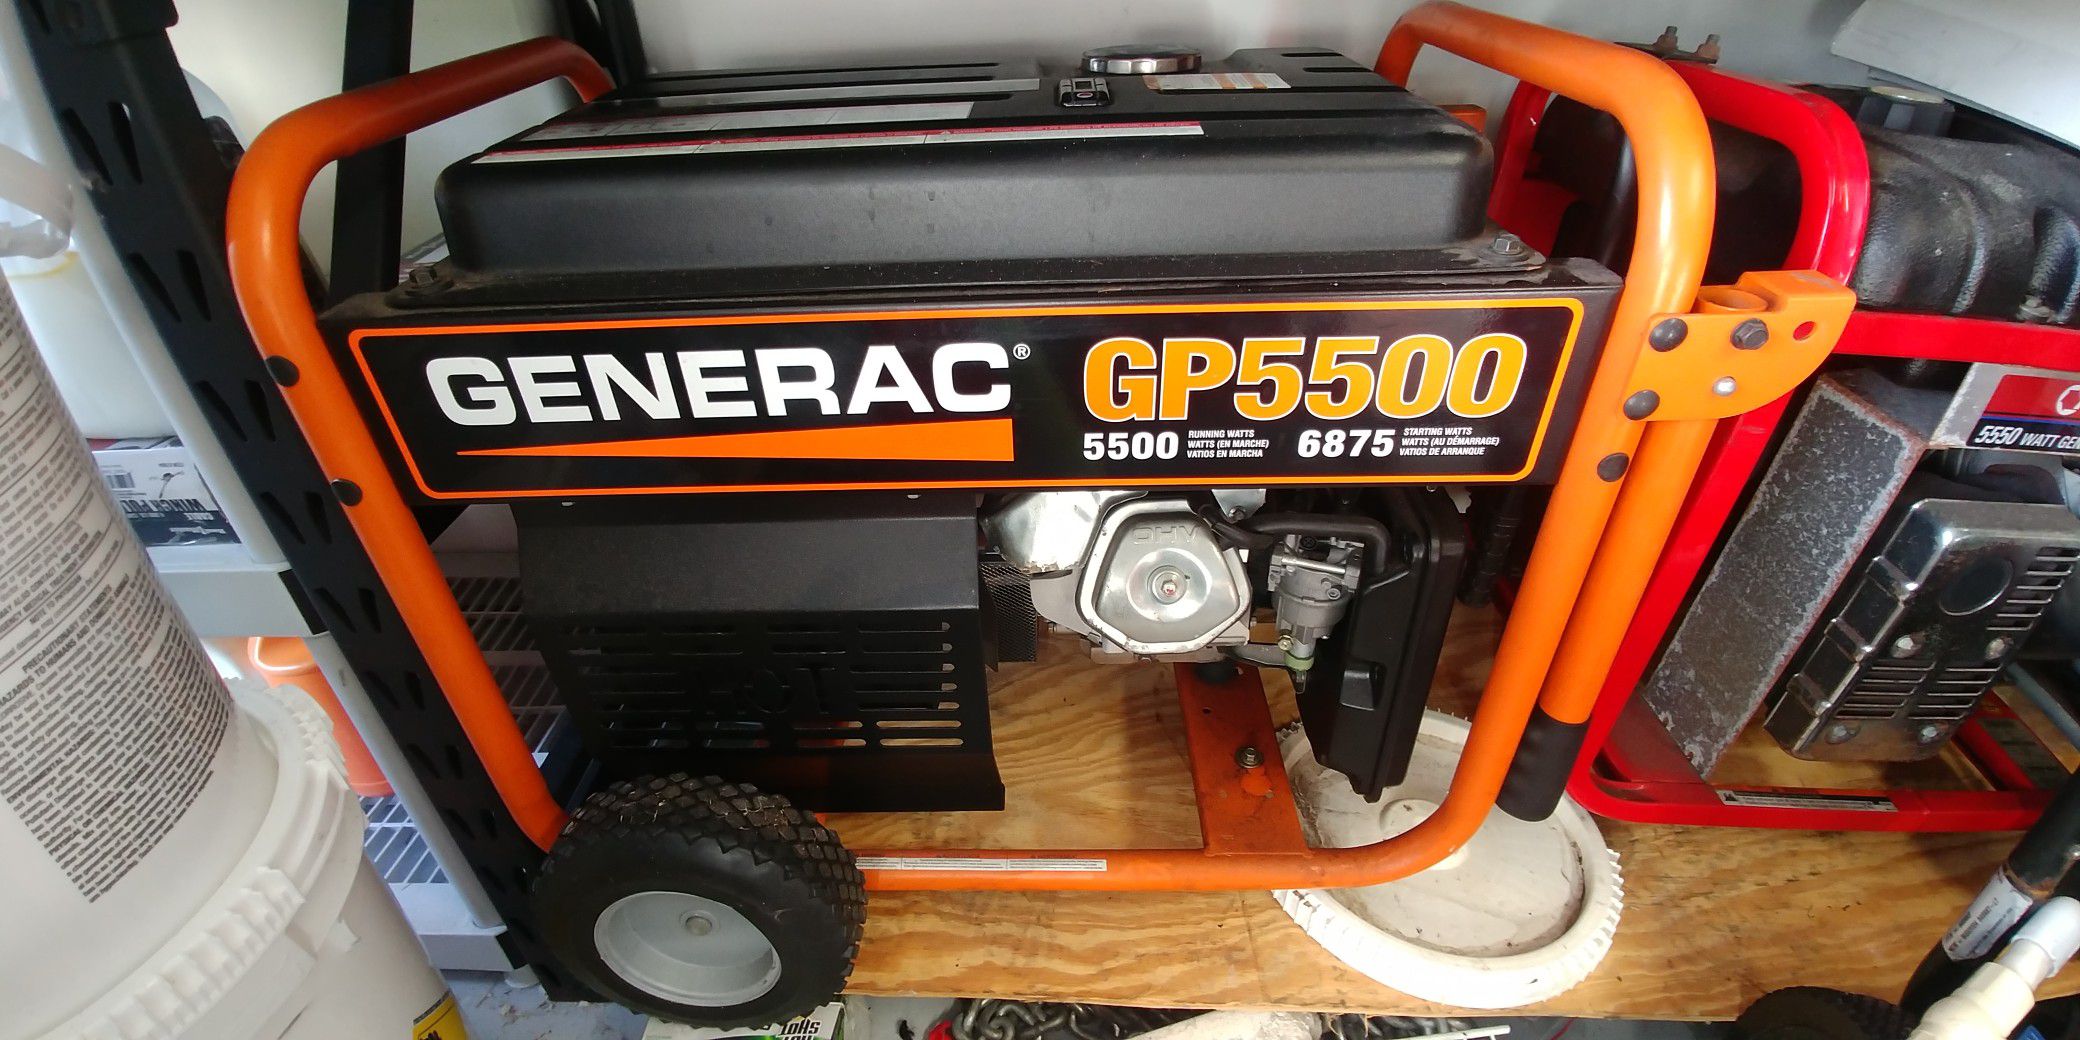 GENERAC GP5500 PORTABLE 5500 WATT GENERATOR RUNS LIKE NEW.